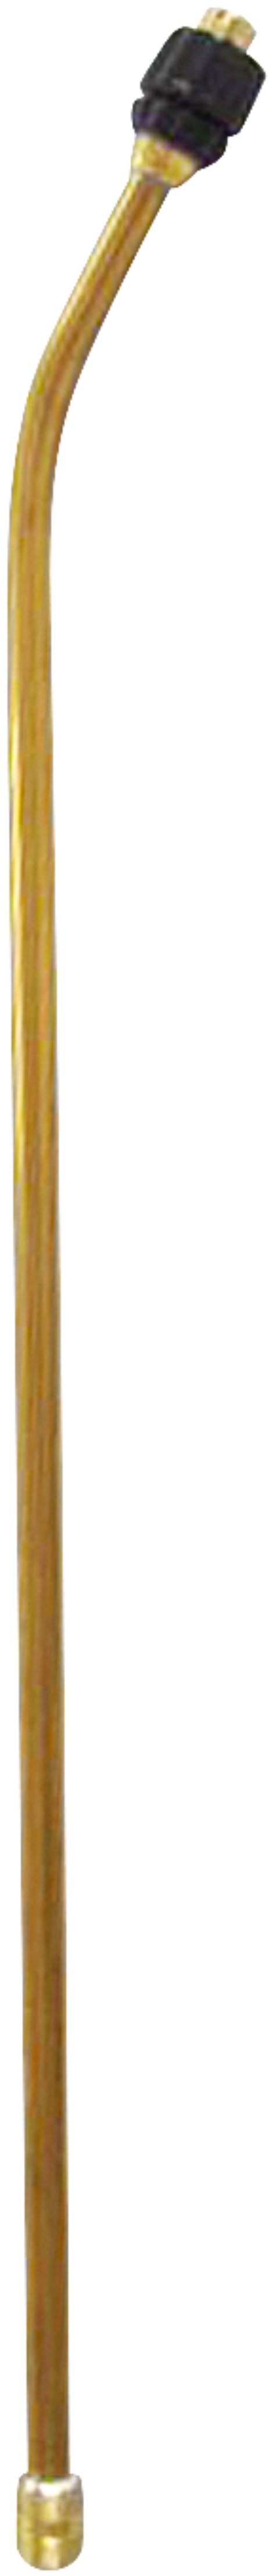 MESTO Spritzrohr, gebogen, 50 cm mit Düse 1,1 mm, MS